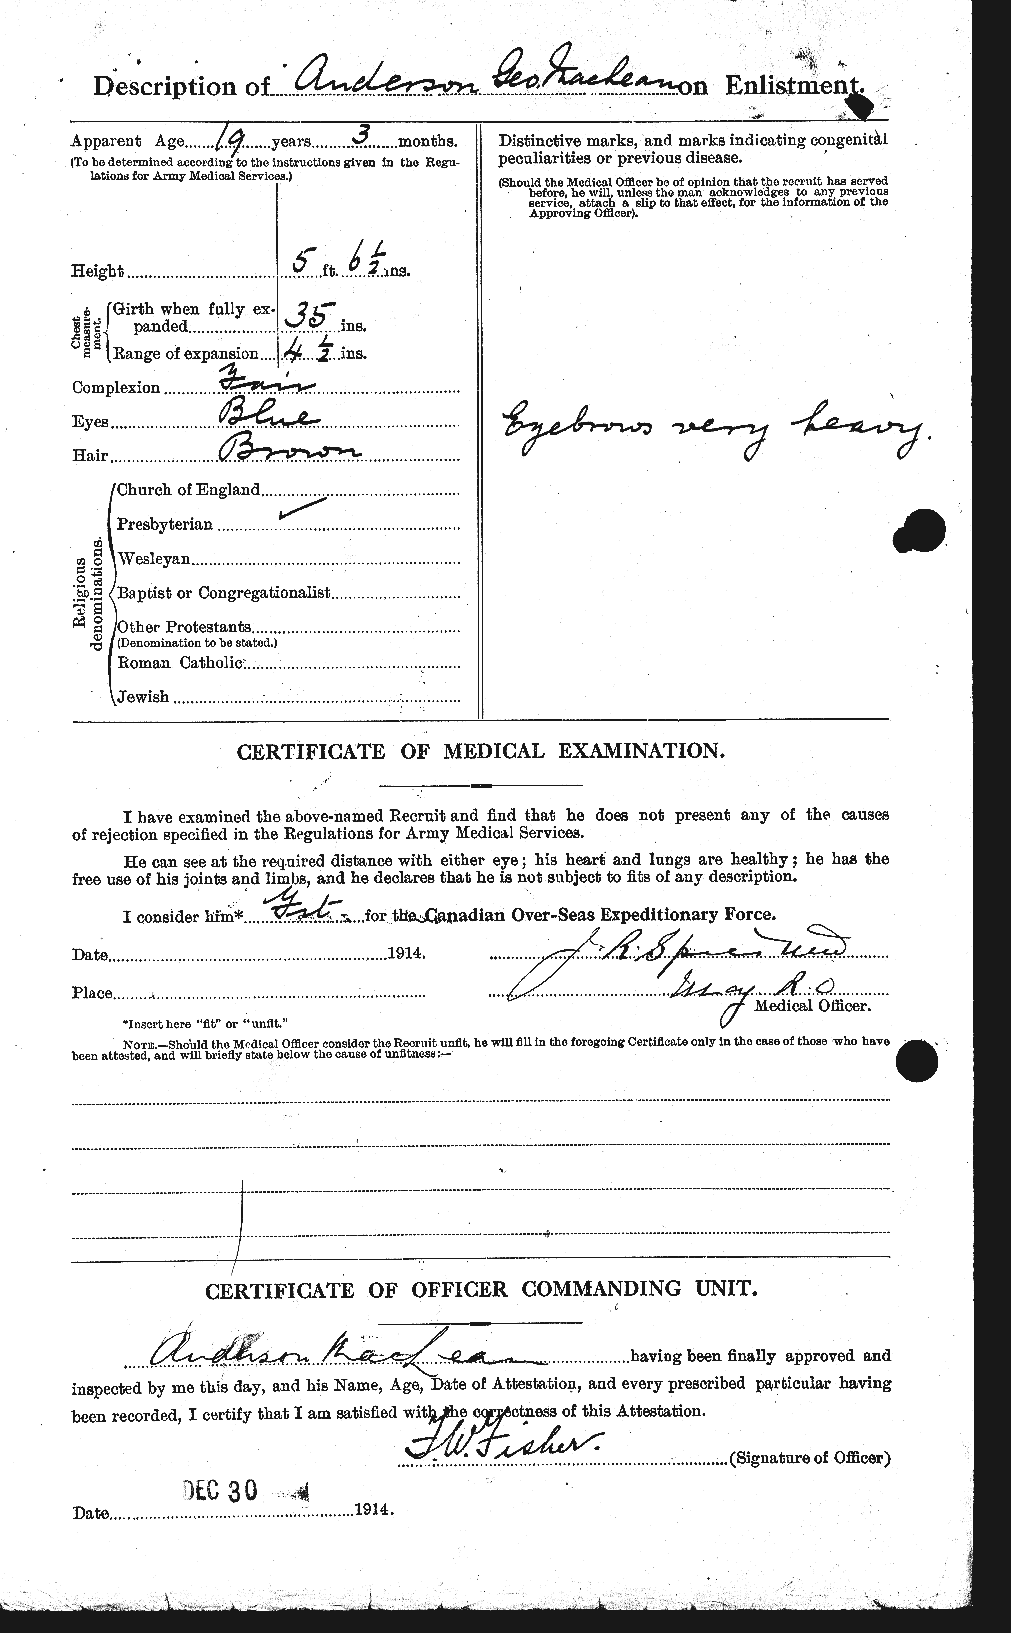 Dossiers du Personnel de la Première Guerre mondiale - CEC 209710b